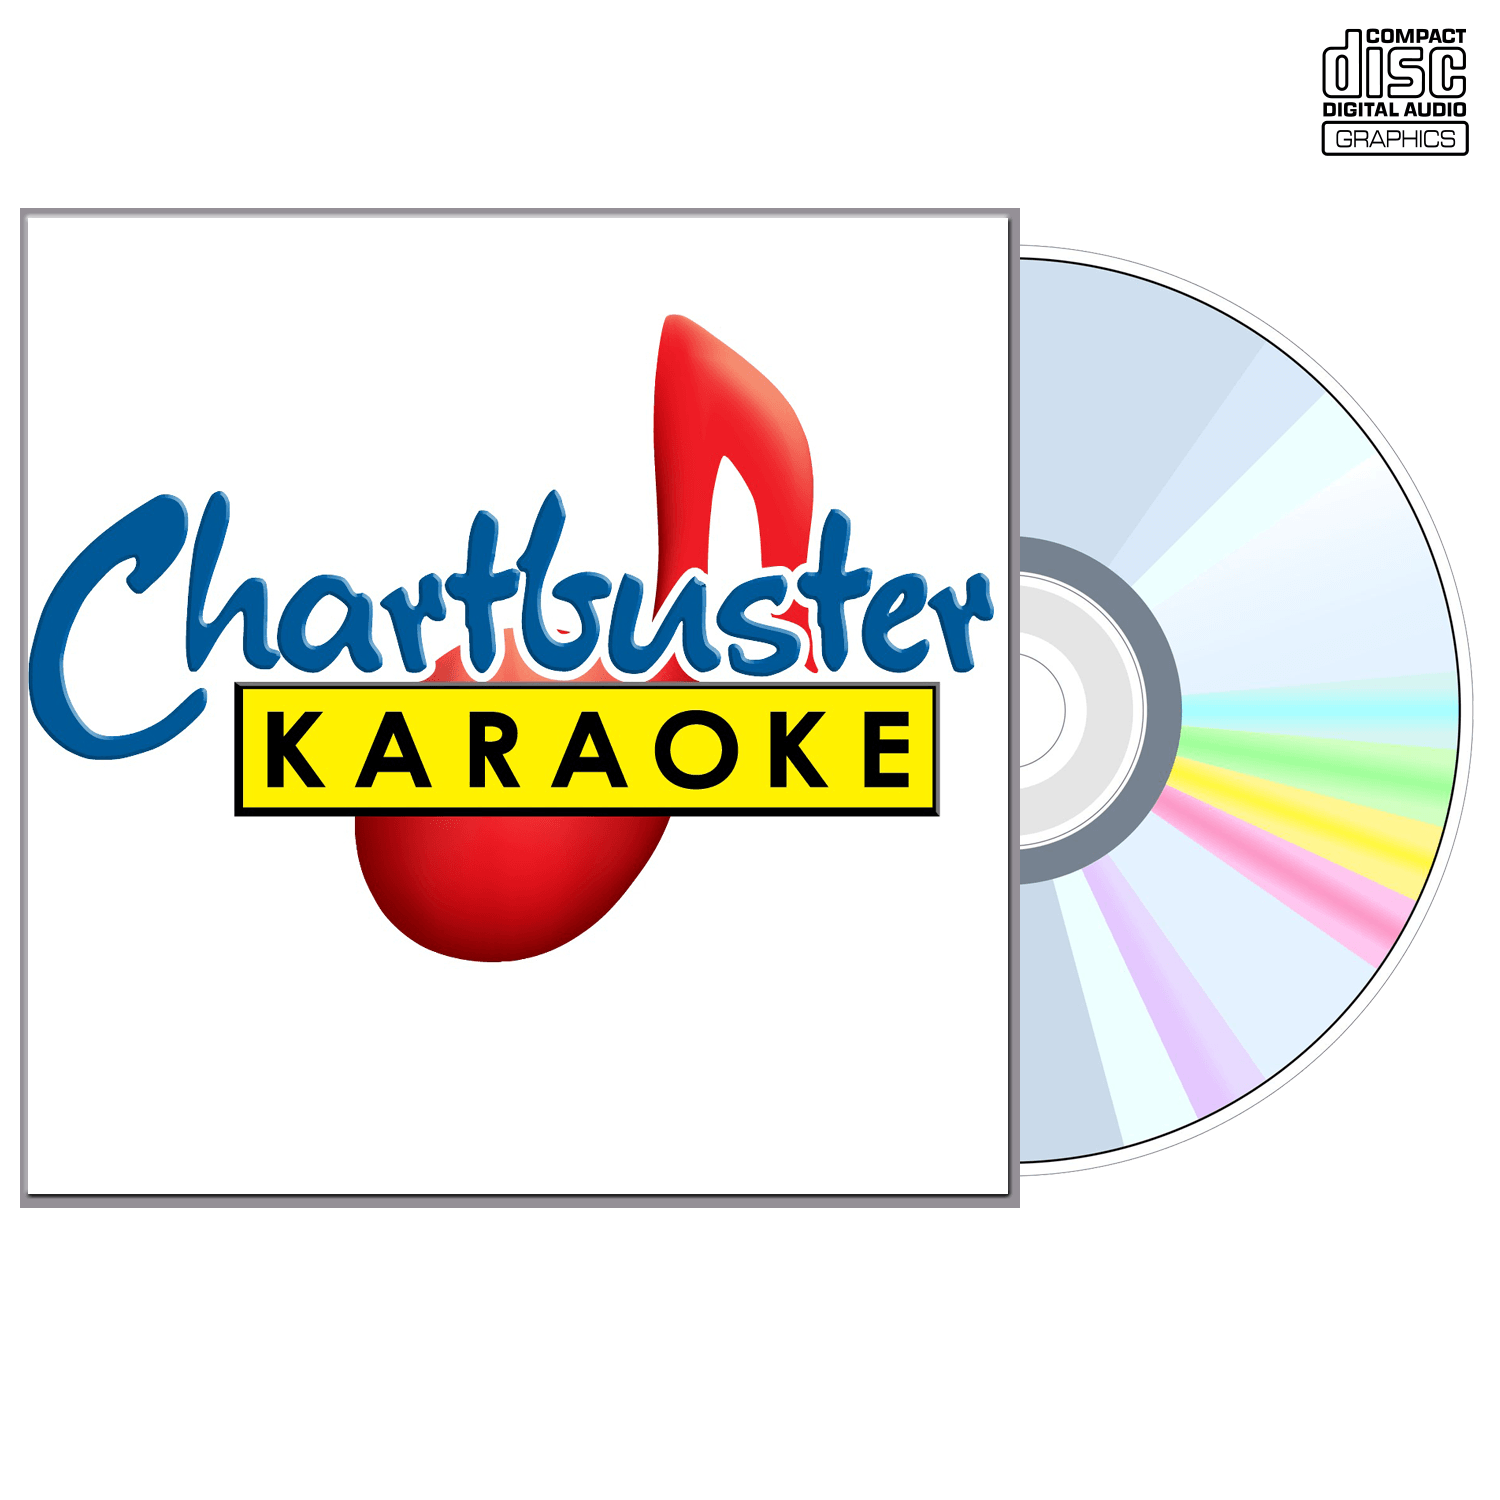 Creed - CD+G - Chartbuster Karaoke - Karaoke Home Entertainment